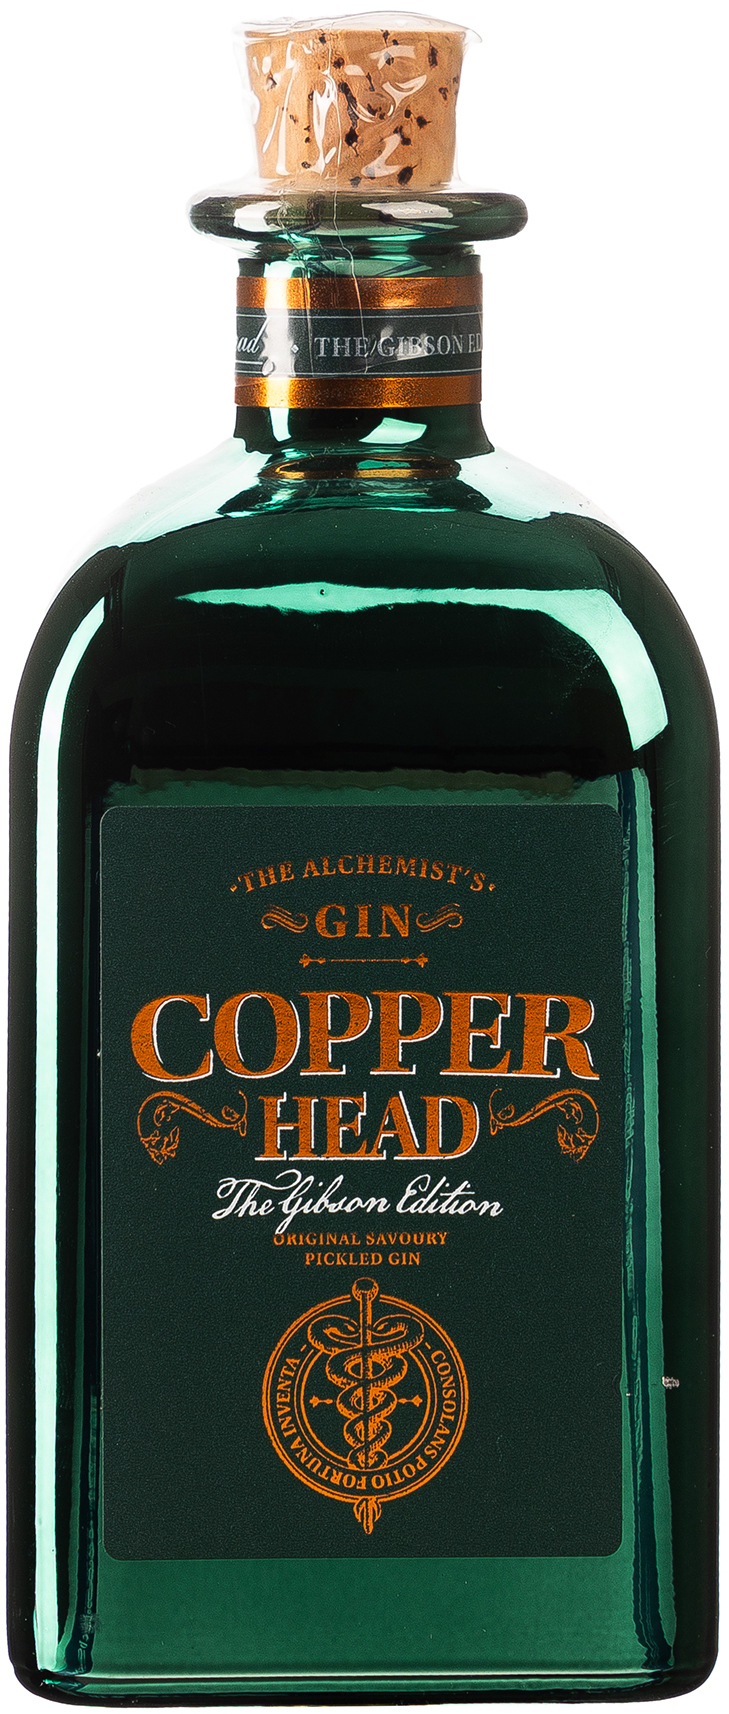 Copper Head Gin Gibson Edition 40% vol. 0,5L